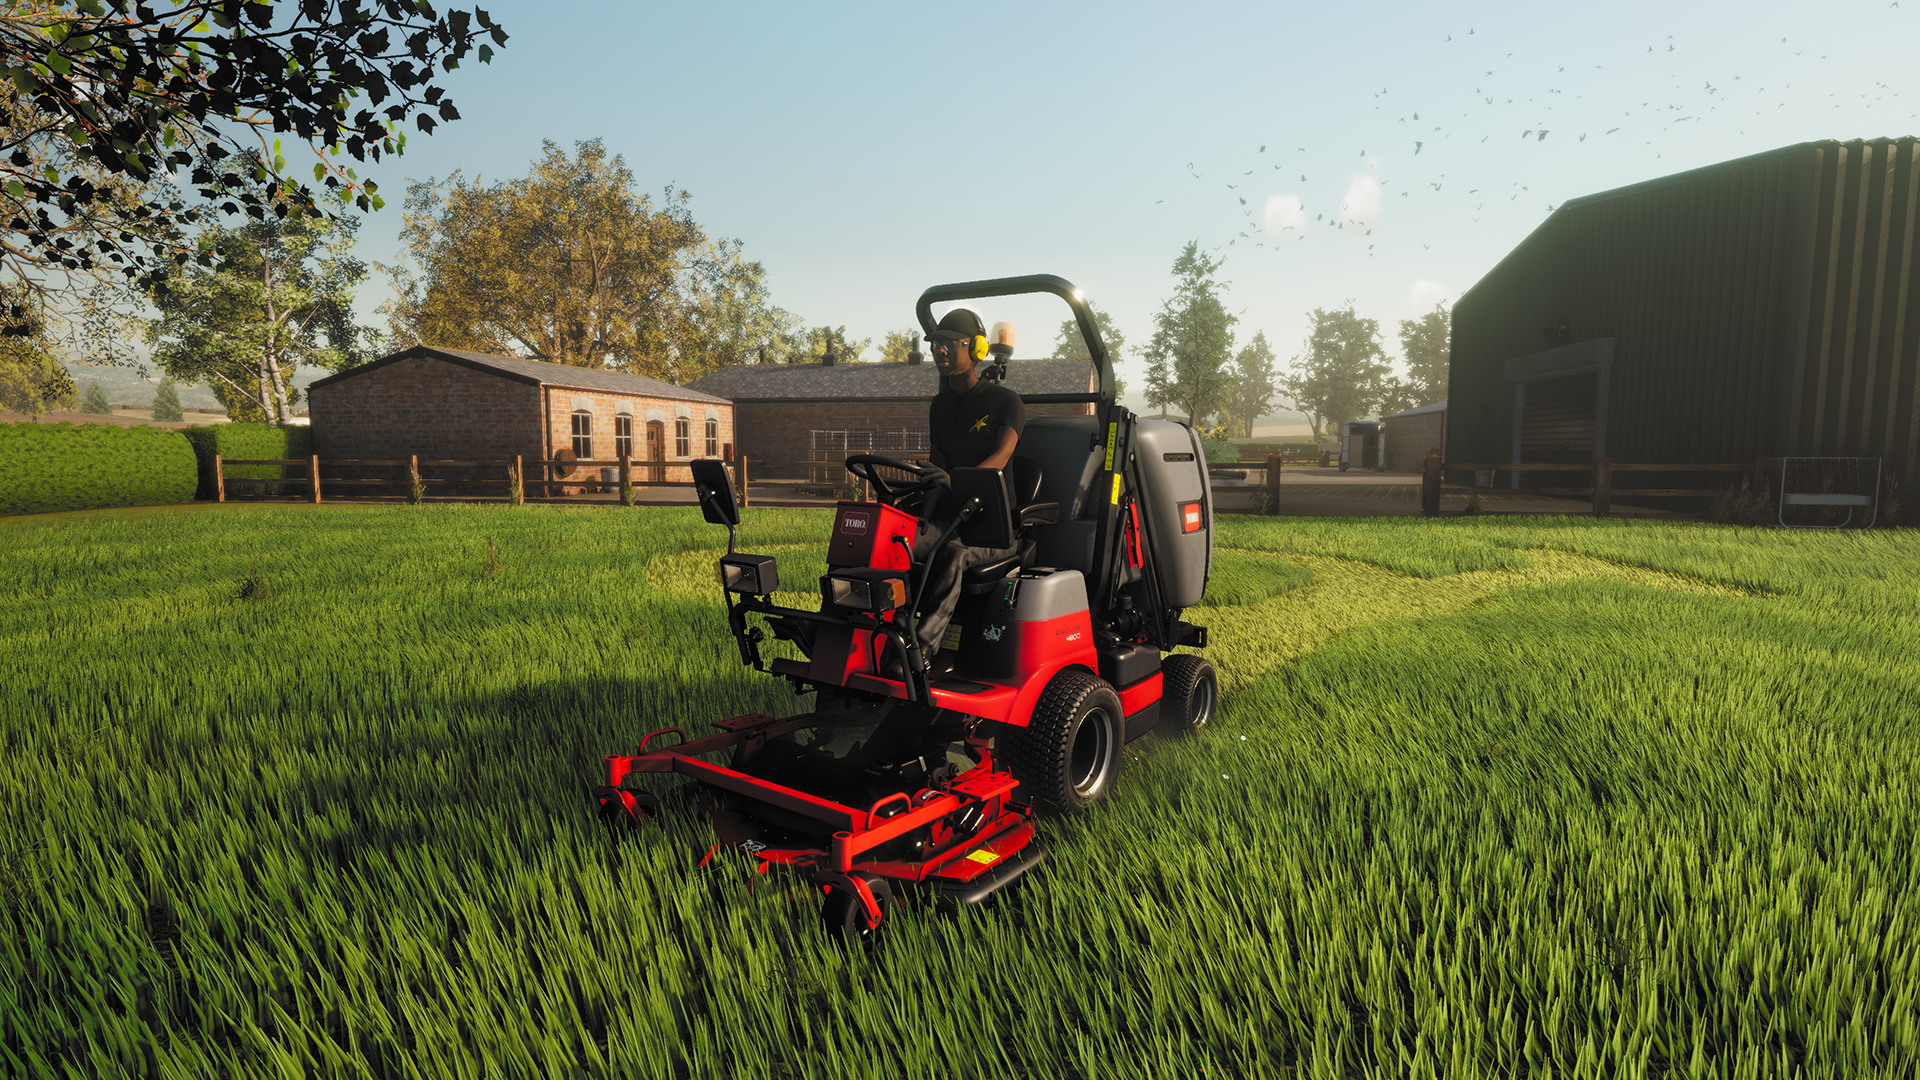 Lawn Mowing Simulator - screenshot 10